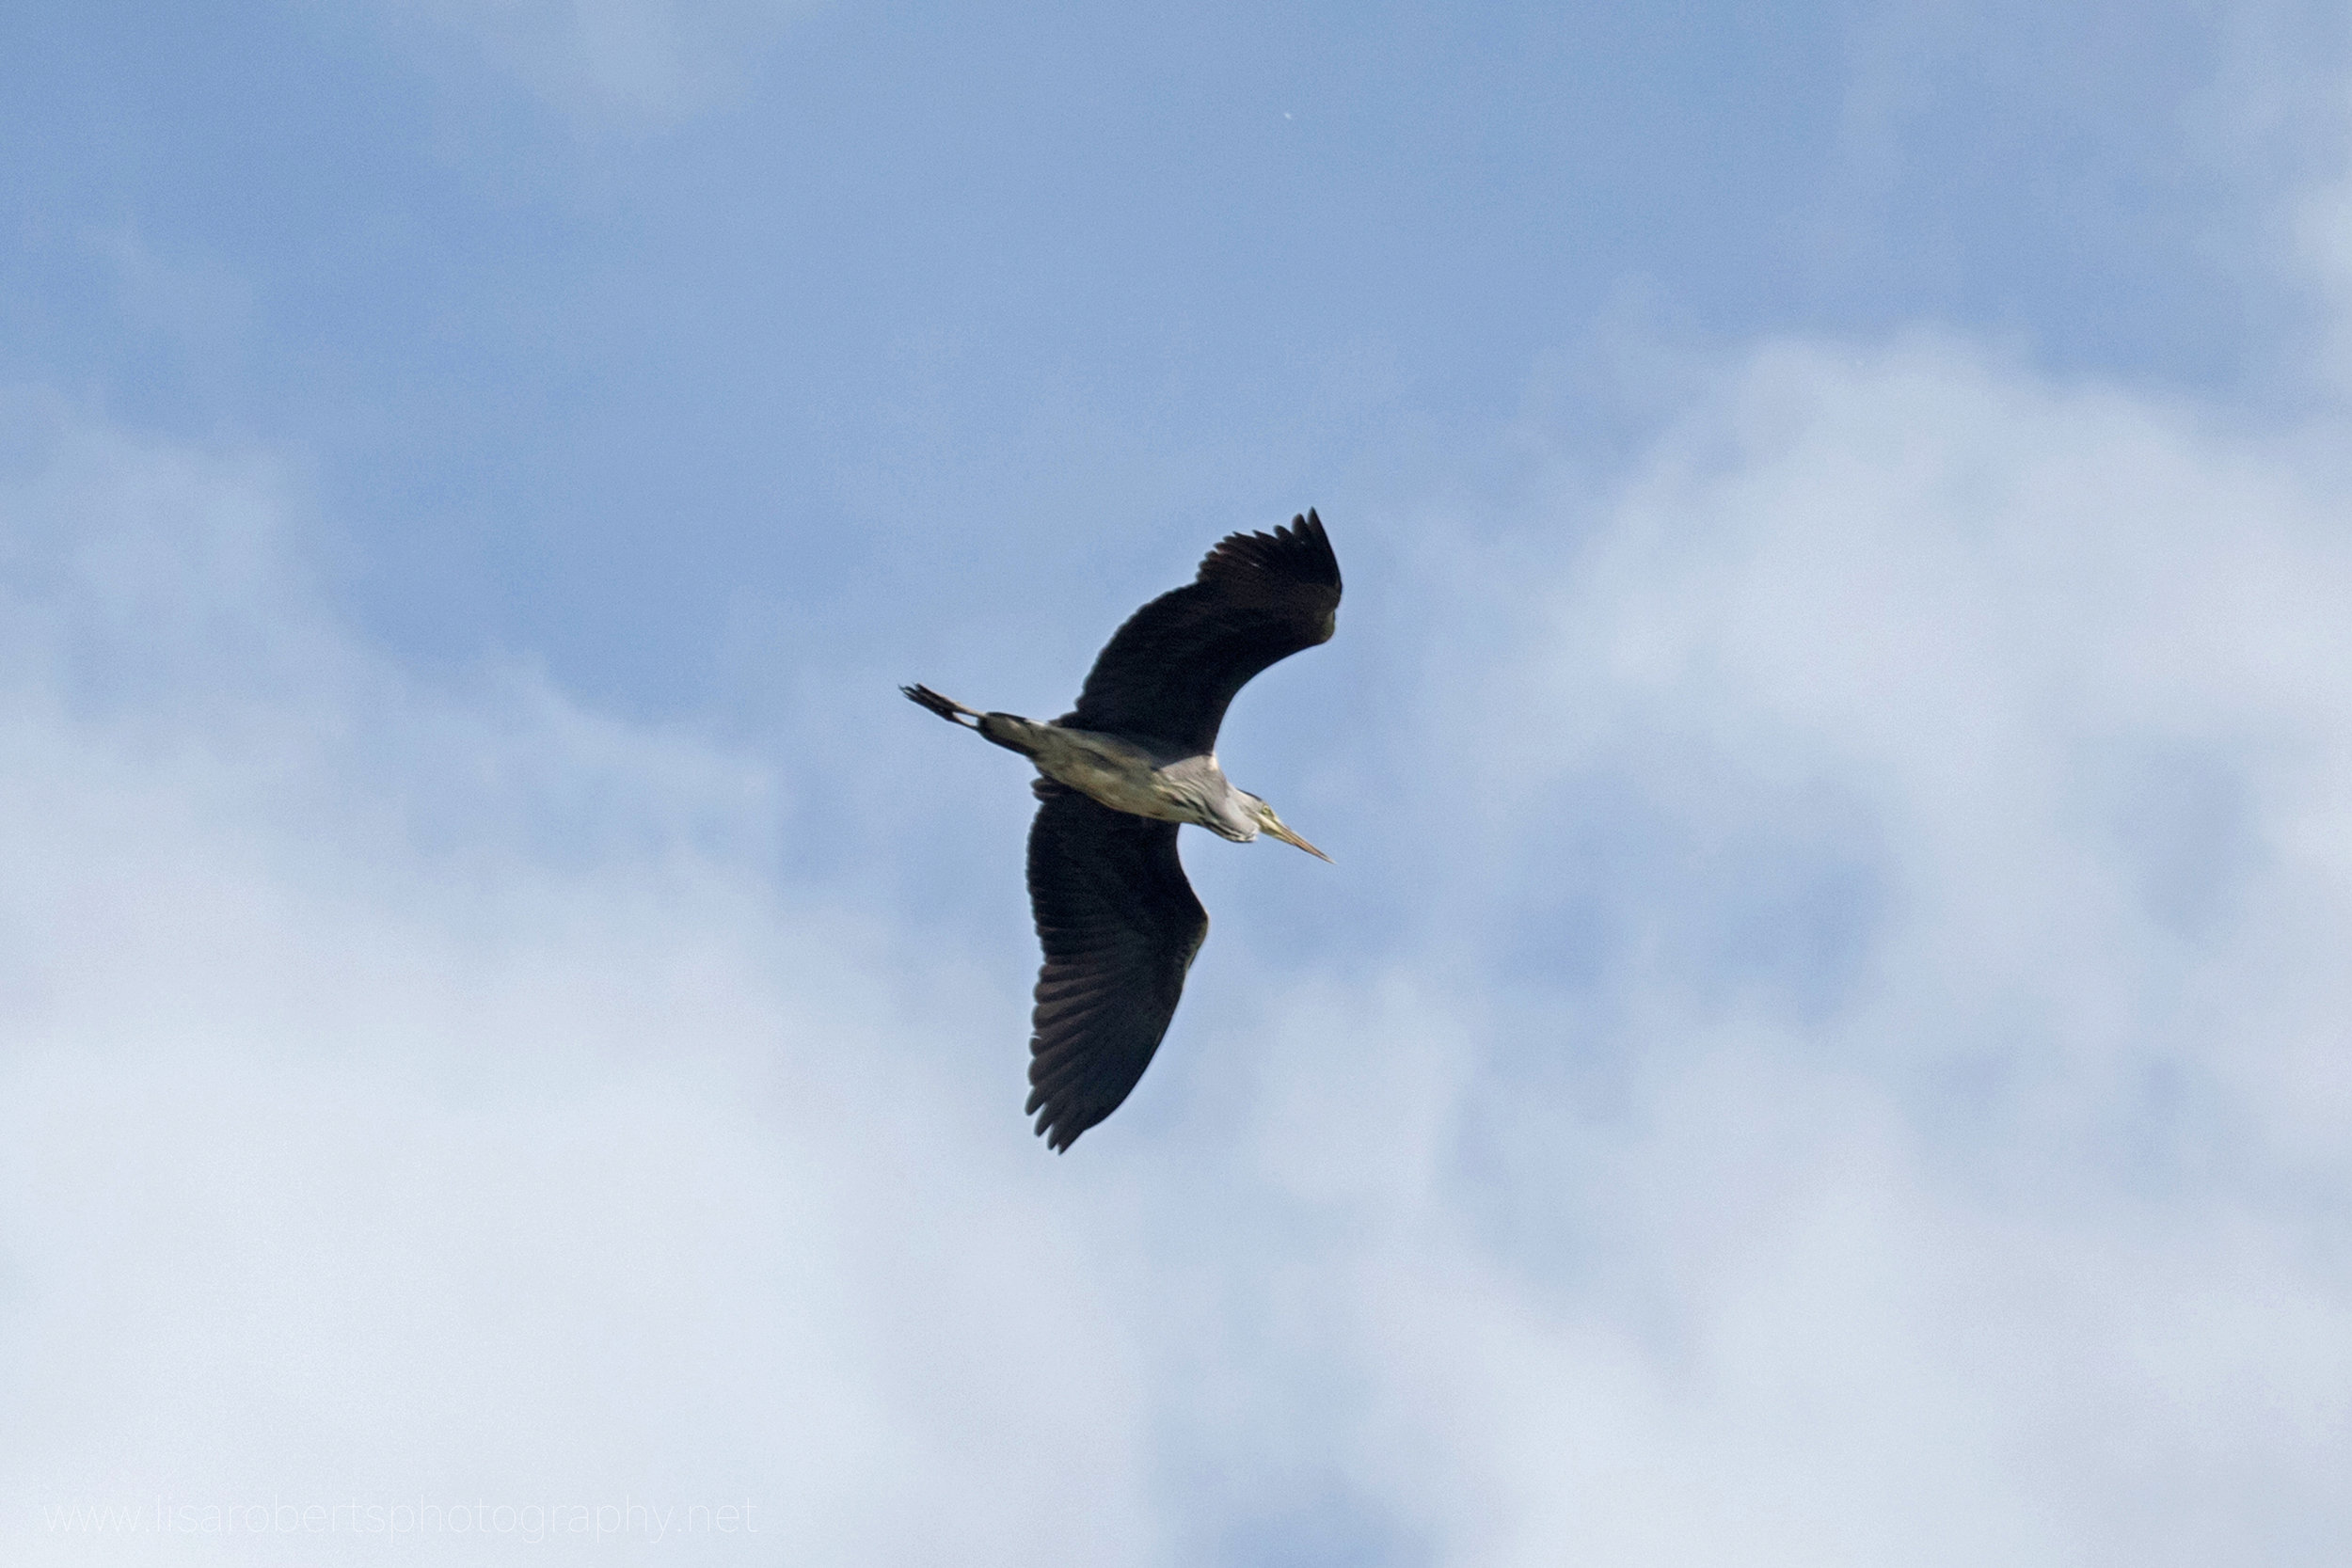  Heron in flight 